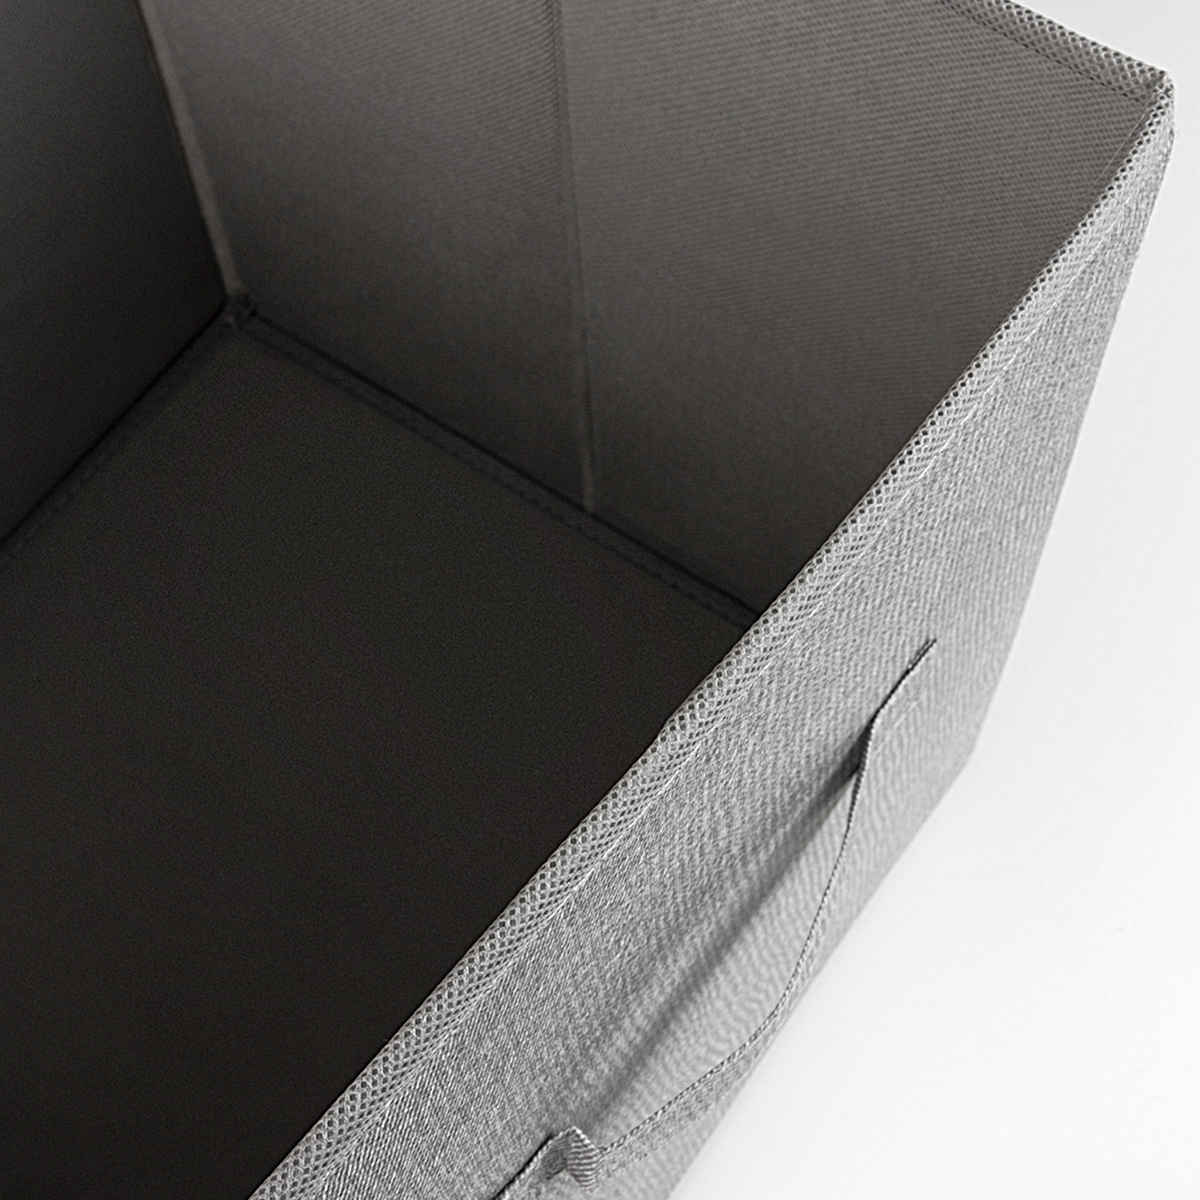 Ящик для зберігання МВМ My Home текстильний, 280x280x280 мм, сірий (TH-08 GRAY) - фото 8